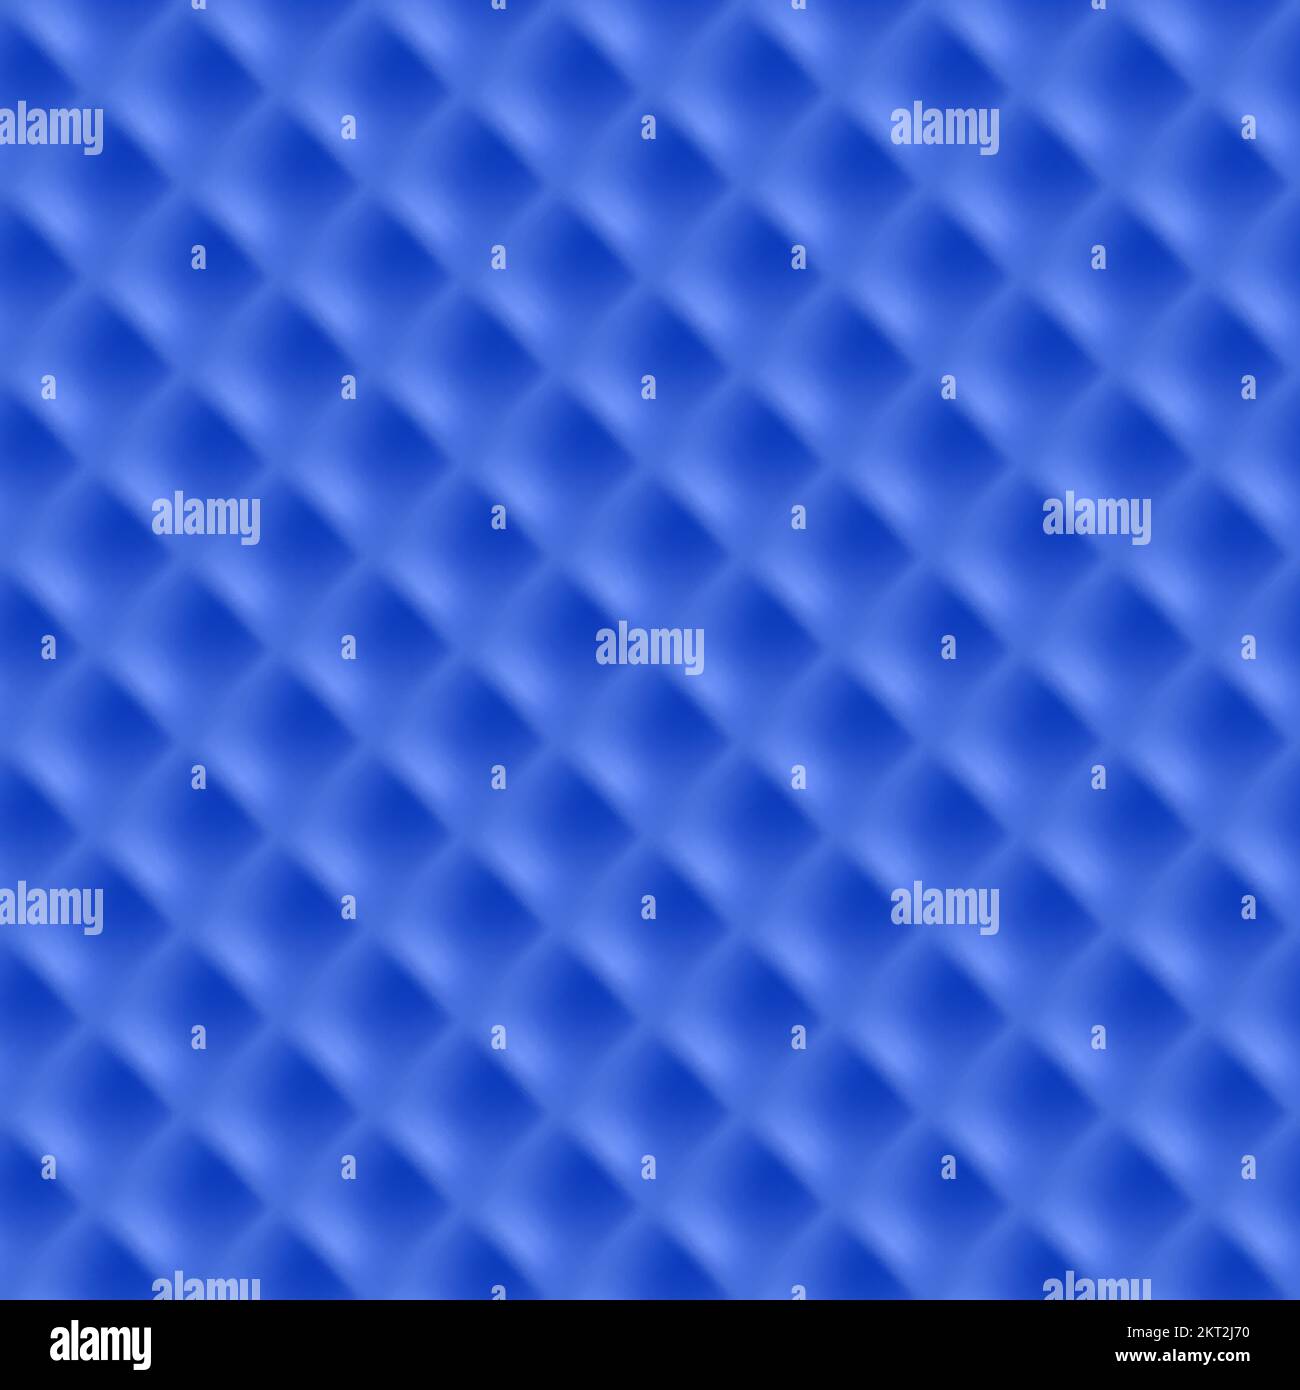 Resumen de fondo azul con líneas de cuadrícula, Rhomb, Plantilla para futurista Ilustración del Vector